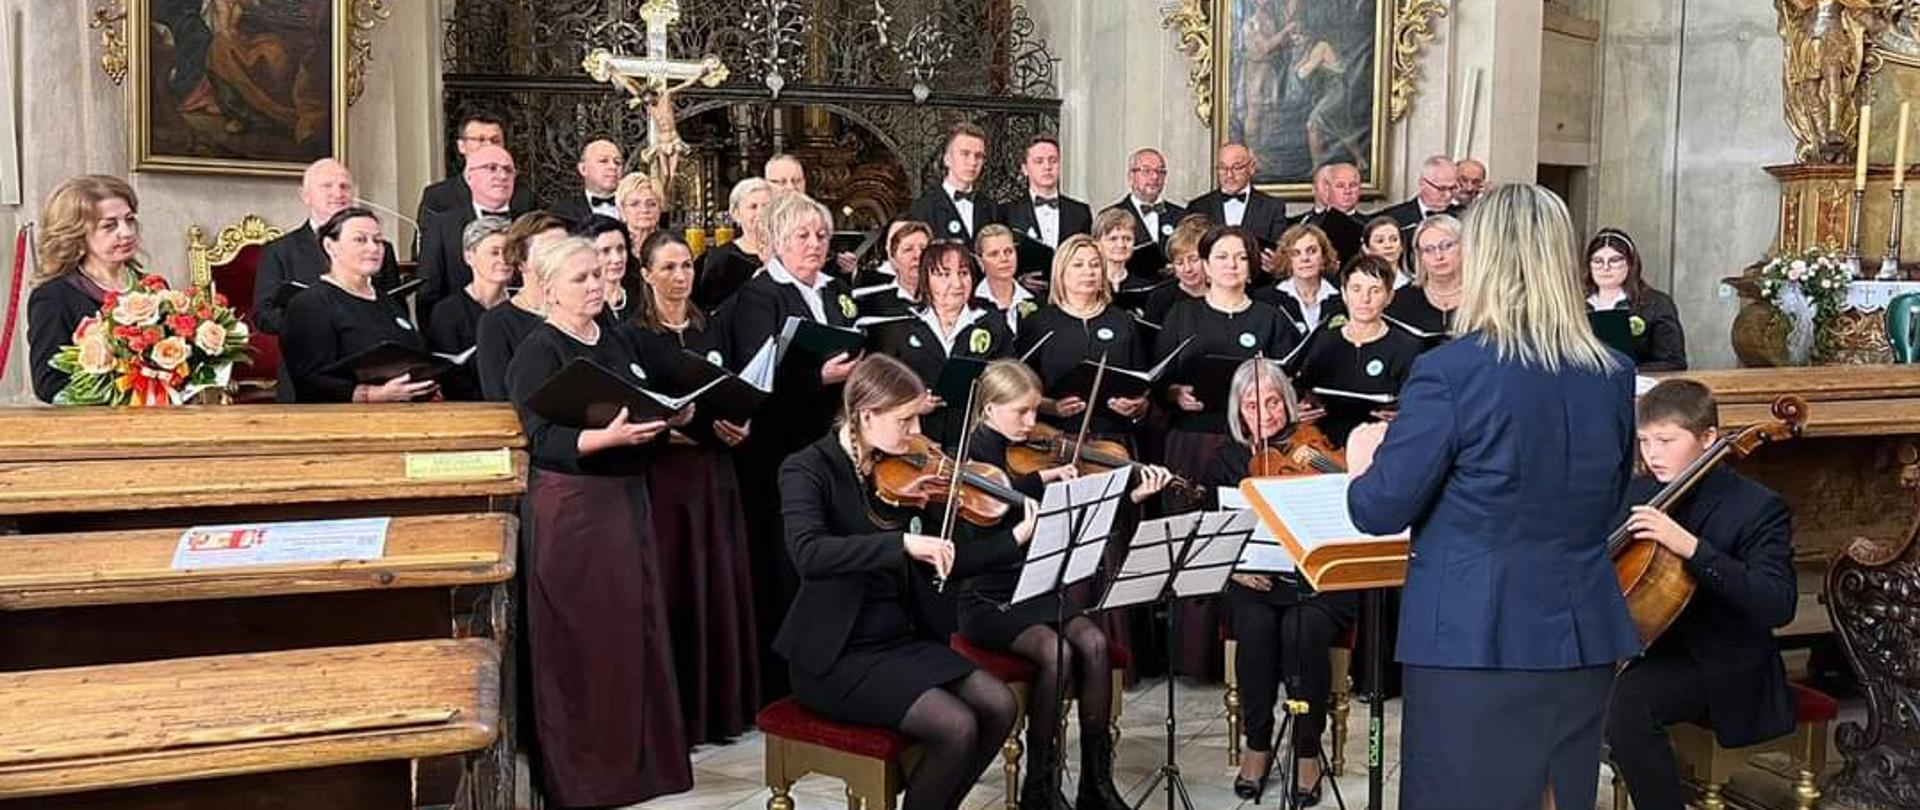 Grupa śpiewających osób, z osobami akompaniującymi na skrzypcach i wiolonczeli oraz osoba dyrygująca na pierwszym planie na tle ołtarza w kościele